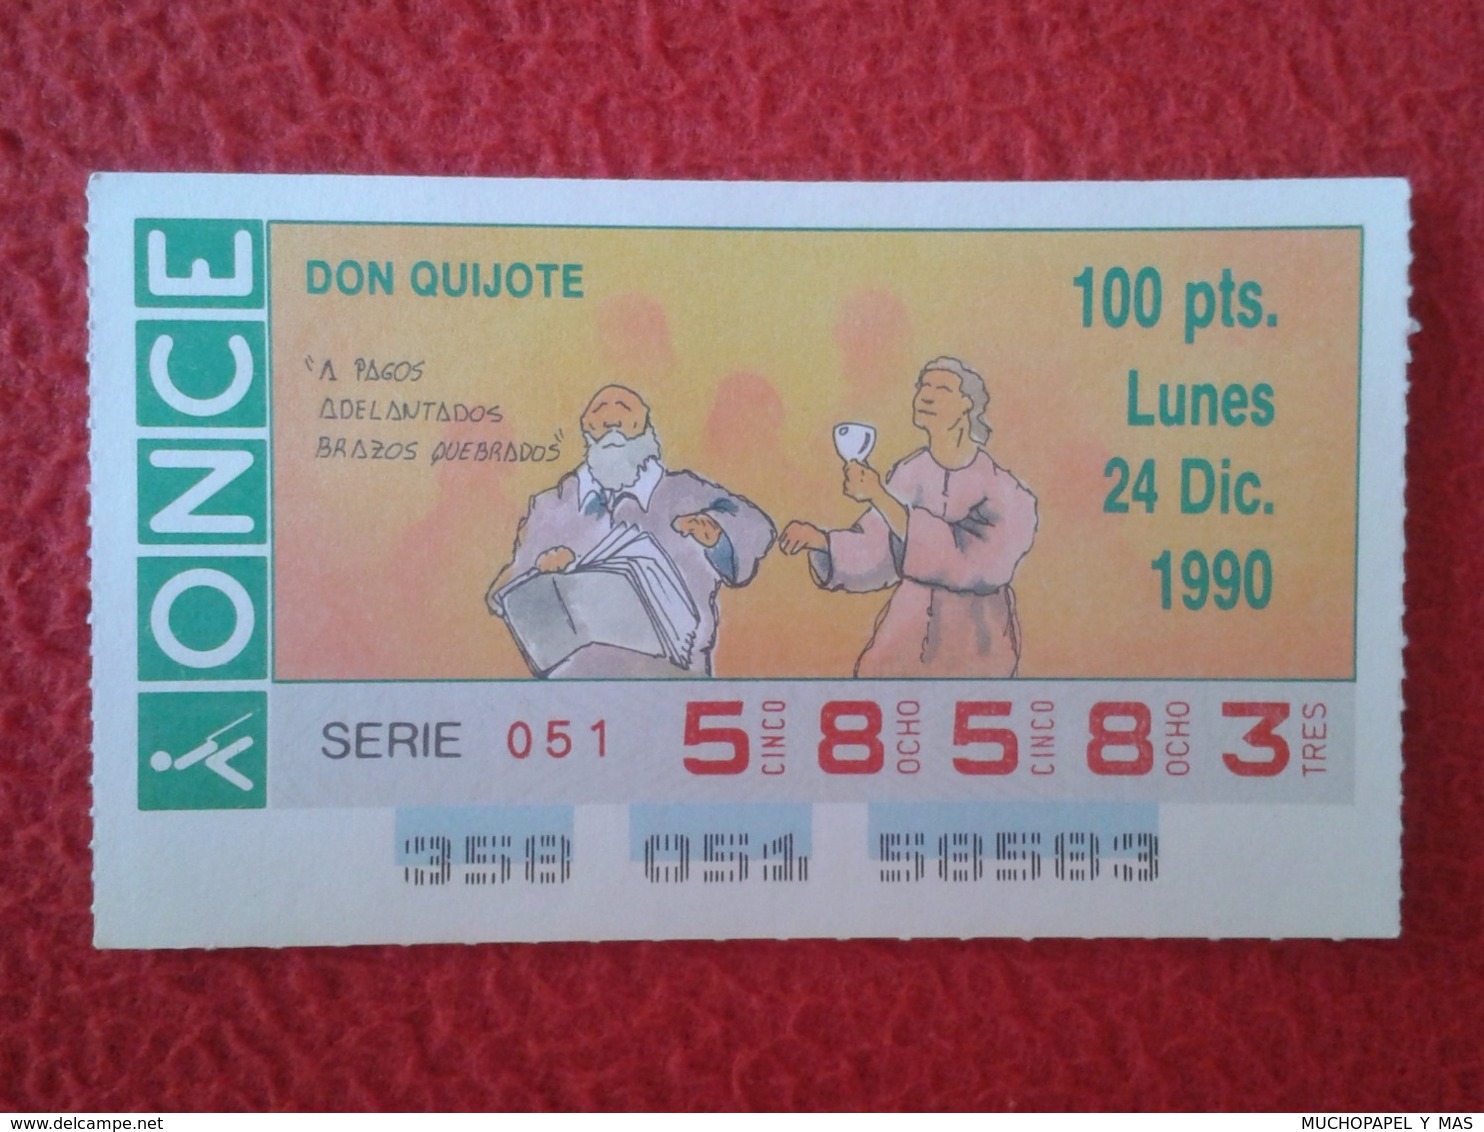 SPAIN CUPÓN DE ONCE CIEGOS LOTTERY LOTERÍA ESPAÑA 1990 DON QUIJOTE LA MANCHA MIGUEL CERVANTES DICHOS ESCENAS REFRANES... - Billetes De Lotería